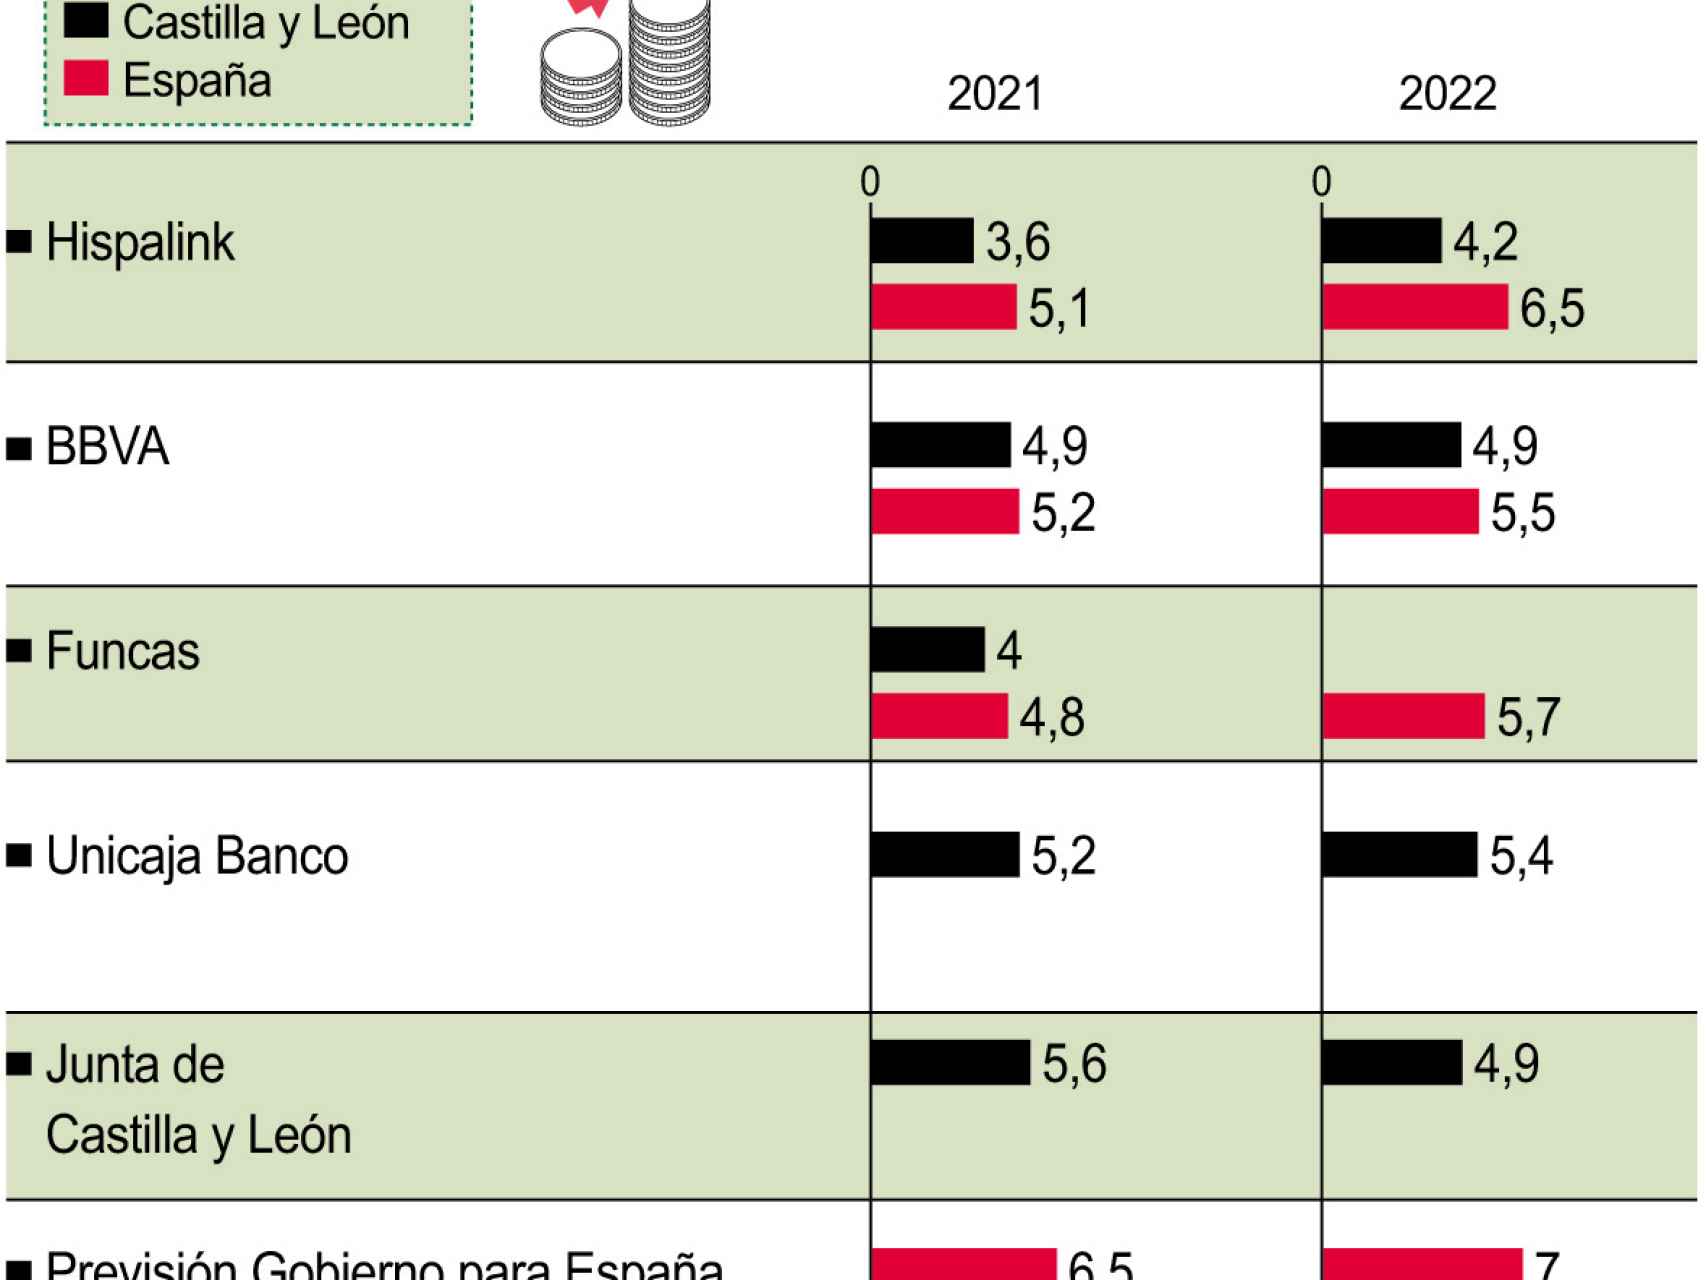 Crecimiento económico en Castilla y León